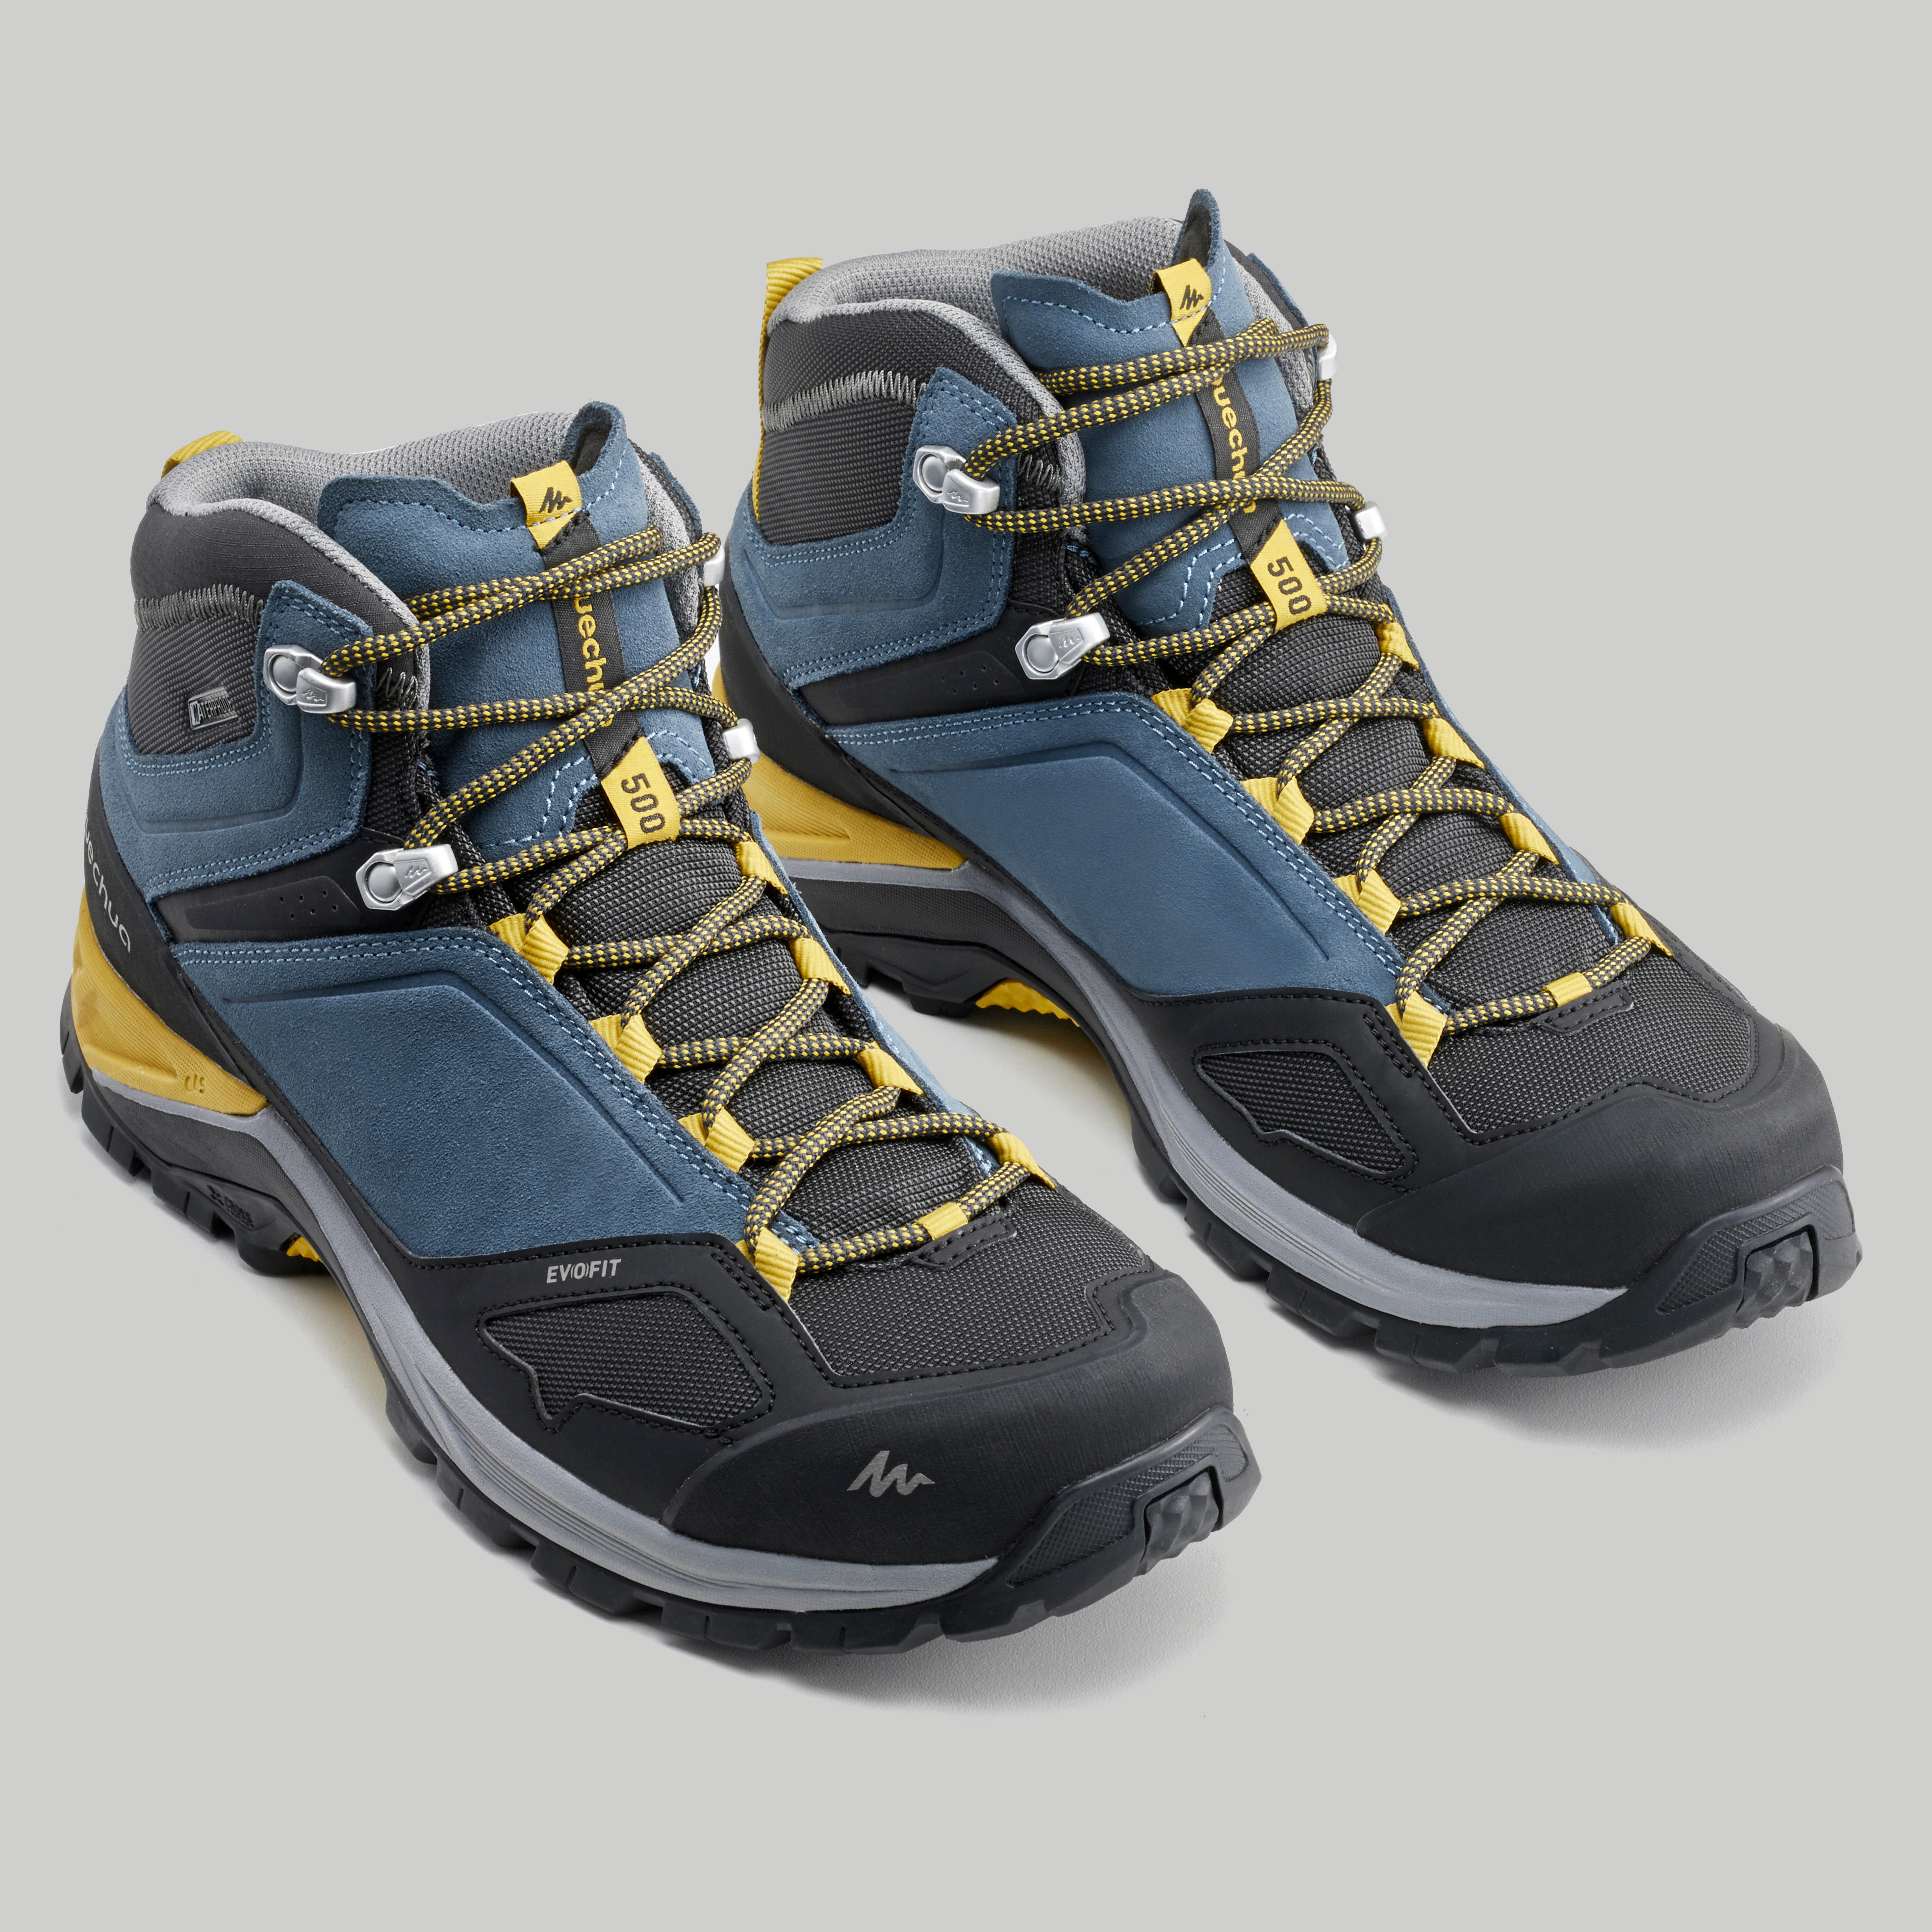 Men's waterproof mountain walking boots 